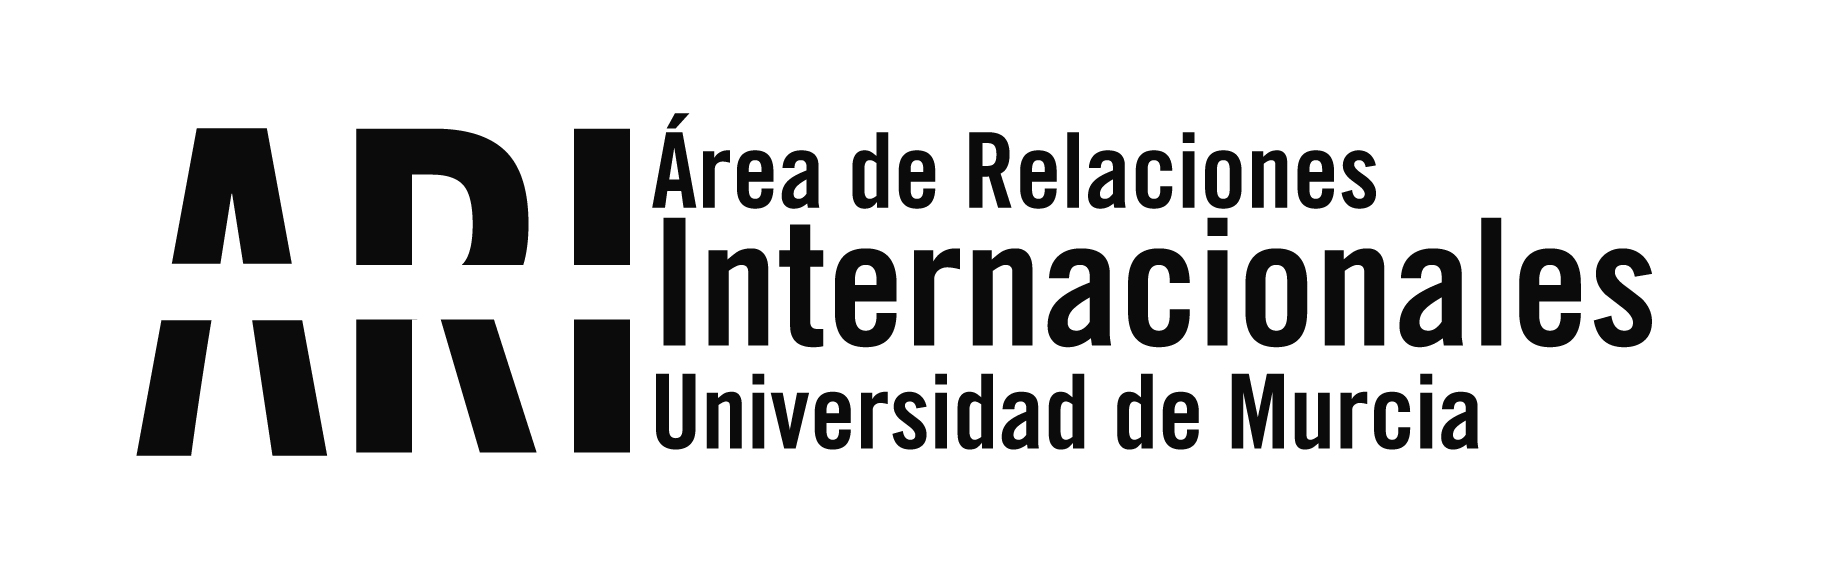 2018 - Viajes Institucionales - Área de Relaciones Internacionales